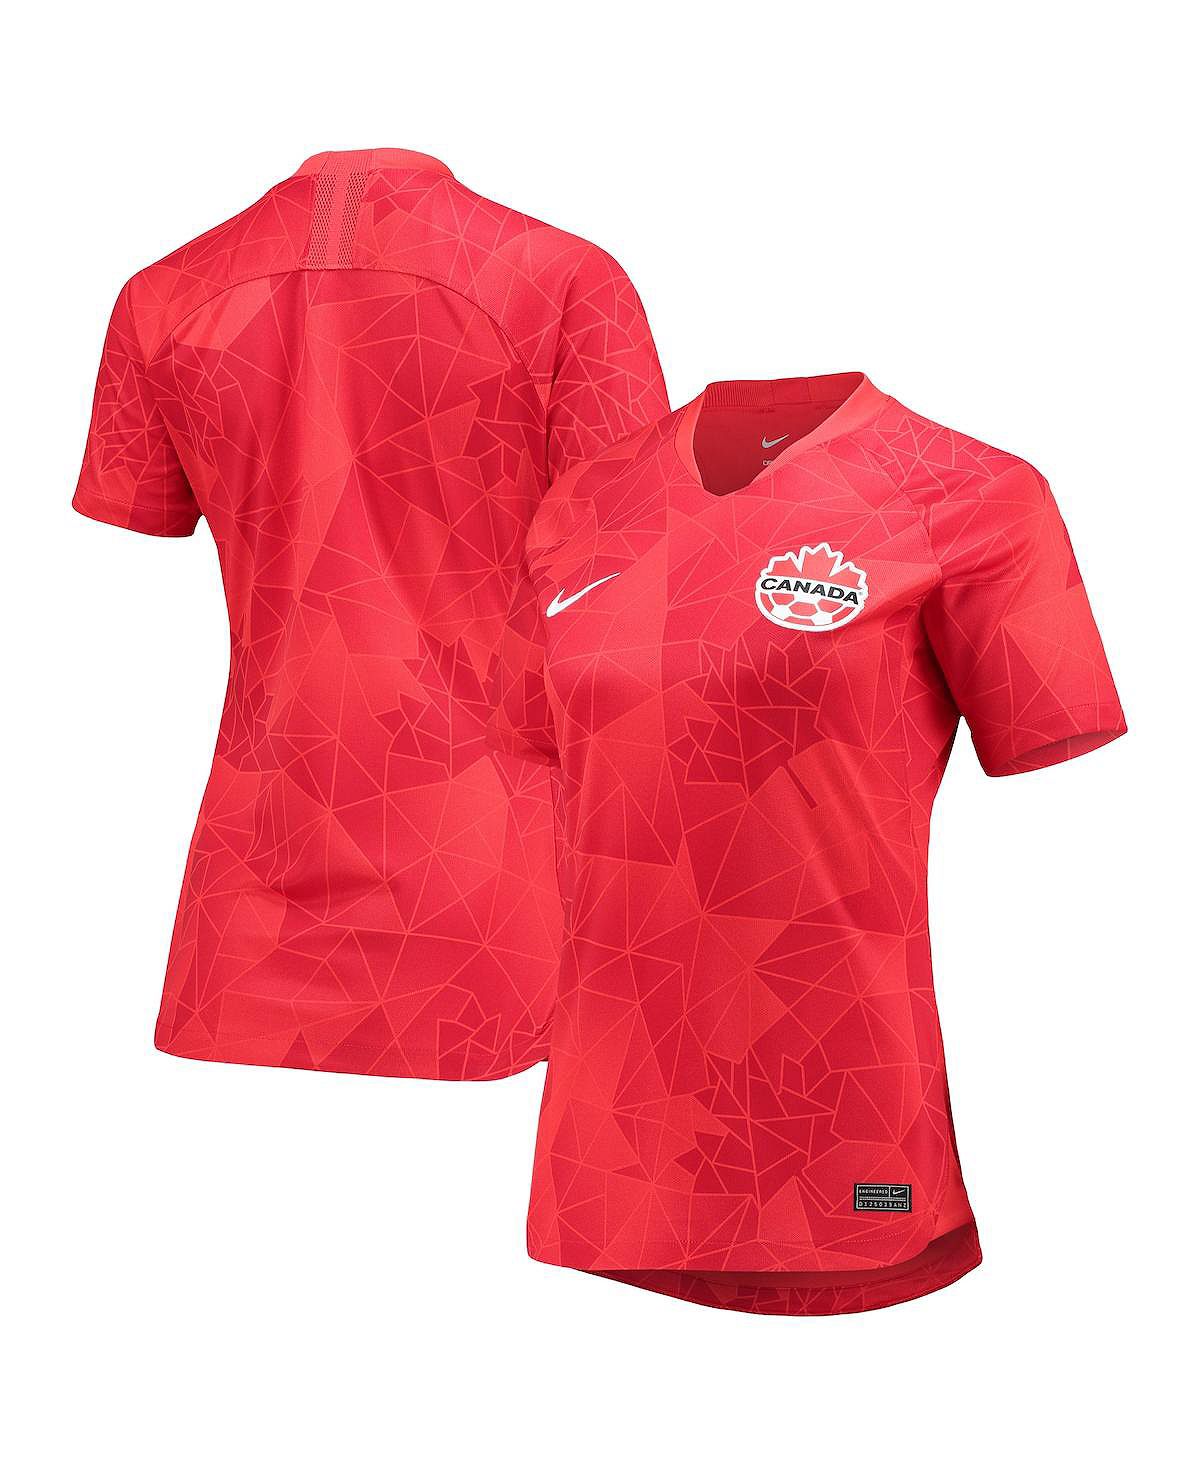 Женская красная домашняя копия джерси женской сборной канады Nike, красный